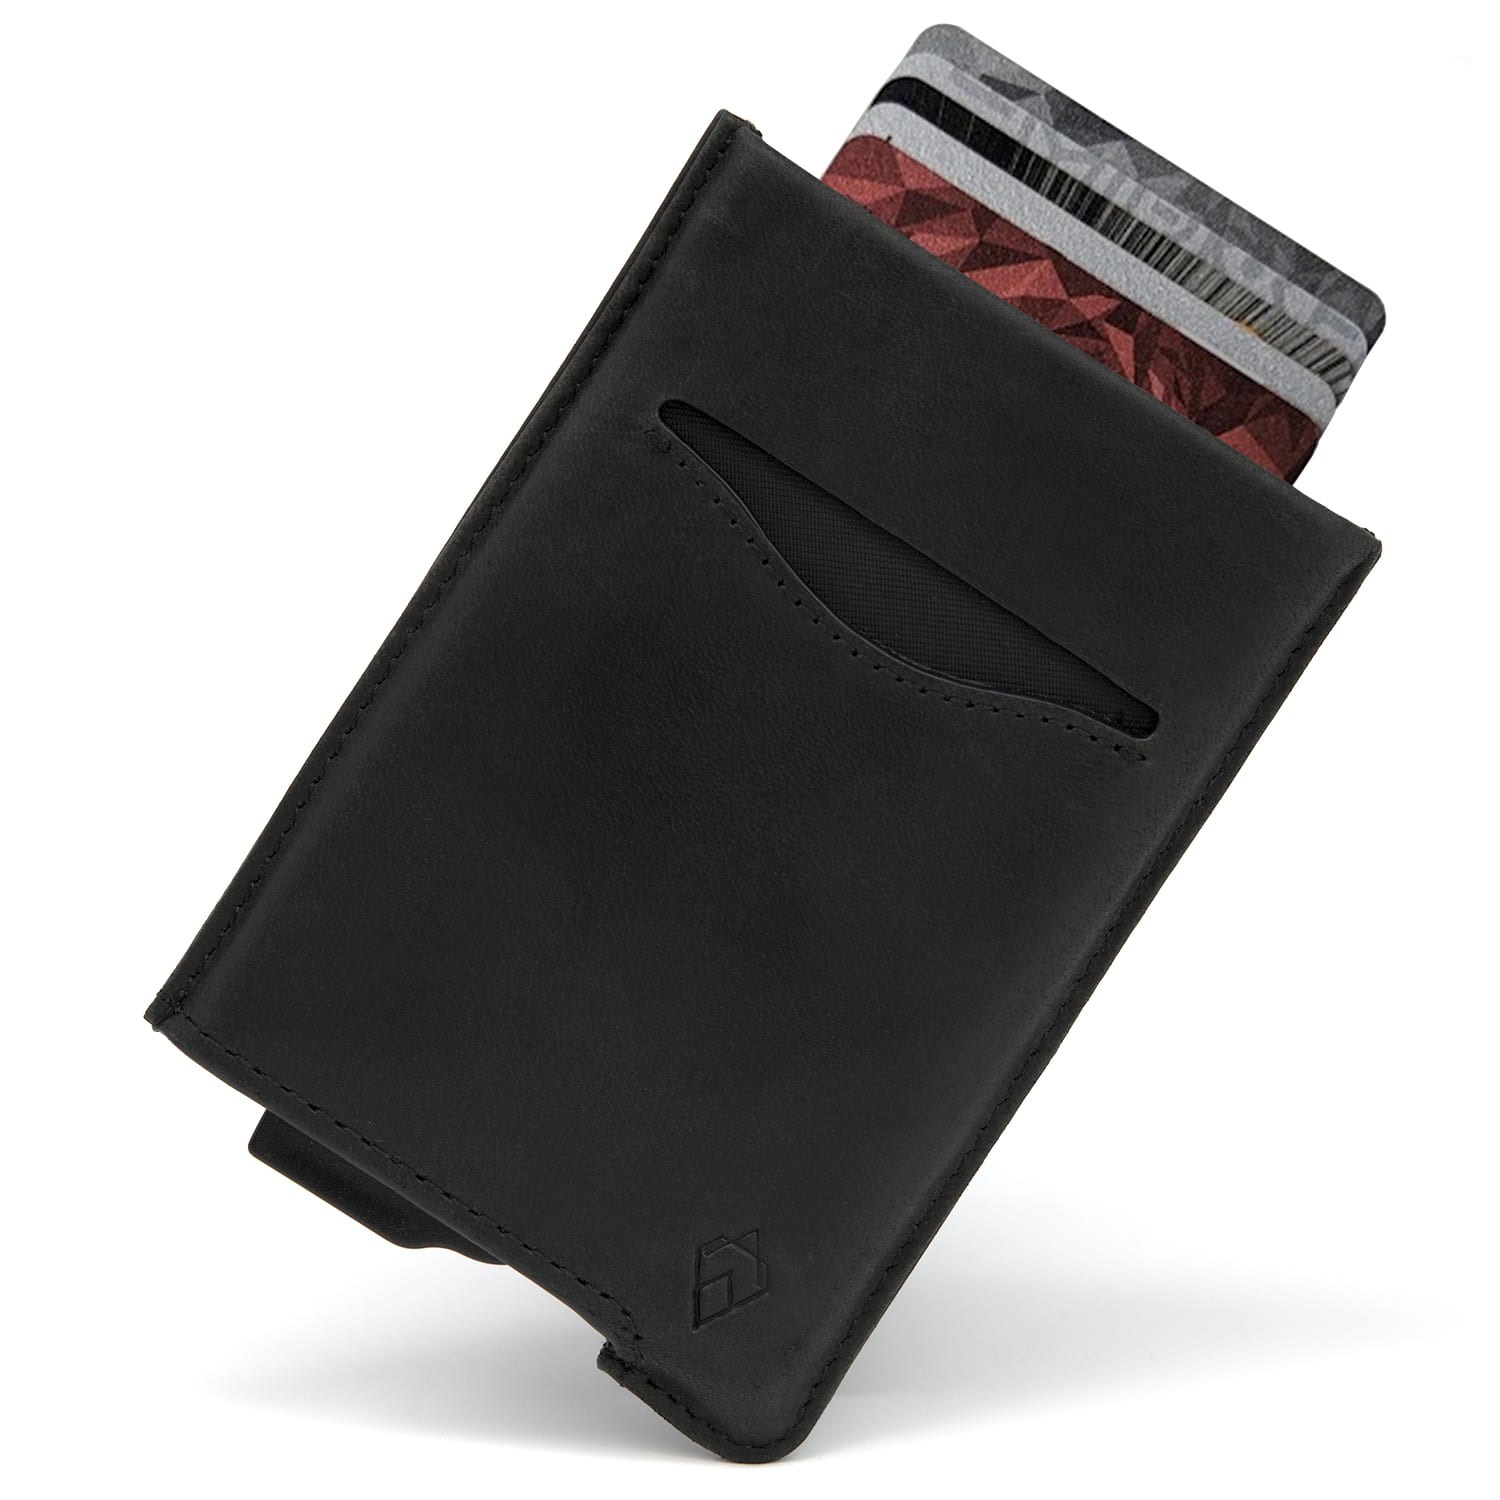 Black RFID blocking credit card holder wallet pop up leather card holder like Andar Pilot Wallet